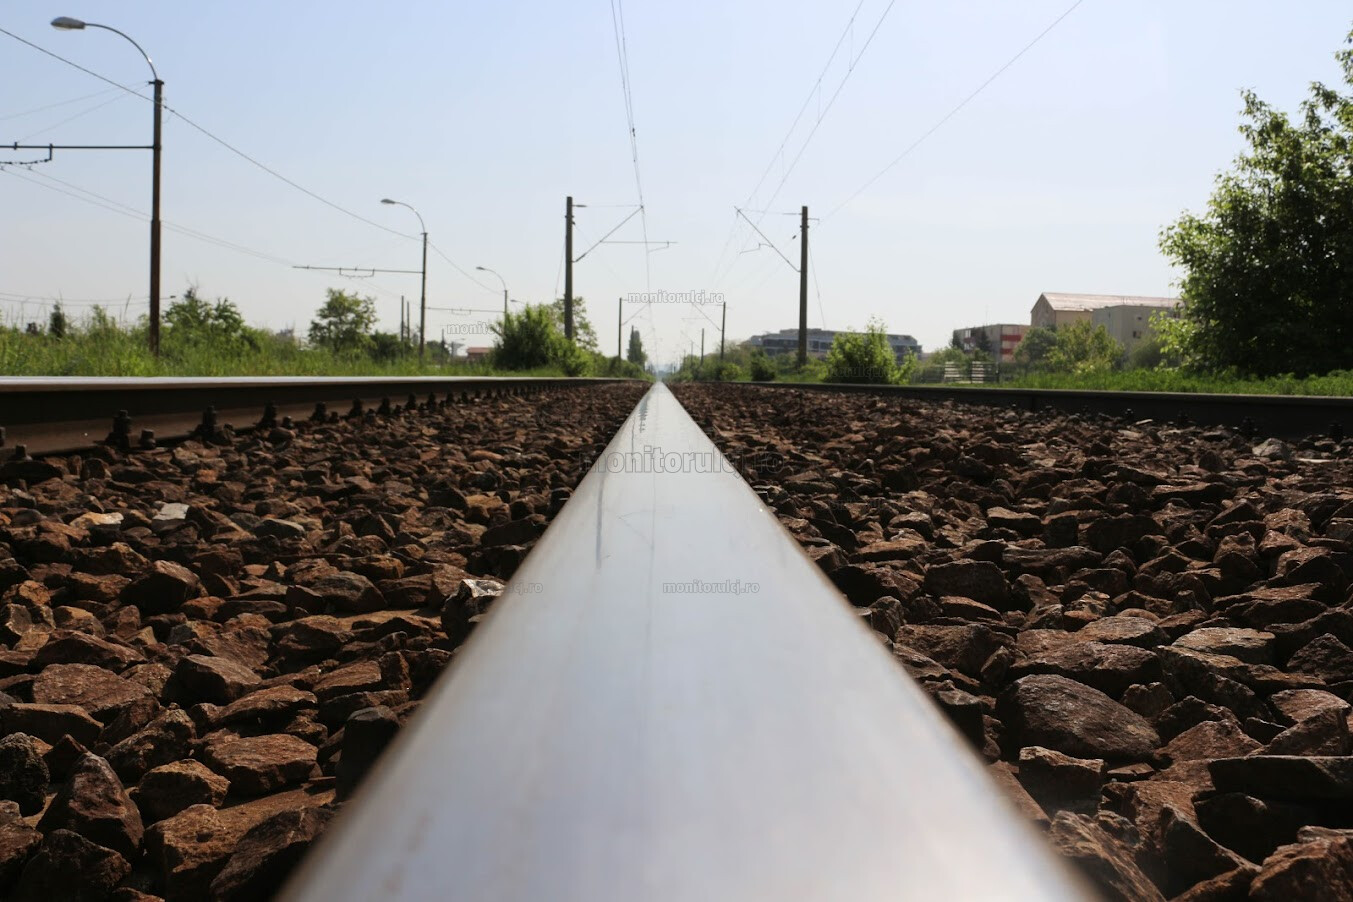 Consiliul Județean Cluj, municipiul Cluj-Napoca și alte șapte comune se asociază pentru realizarea trenului metropolitan. FOTO: Diana CÎMPEAN/ monitorulcj.ro